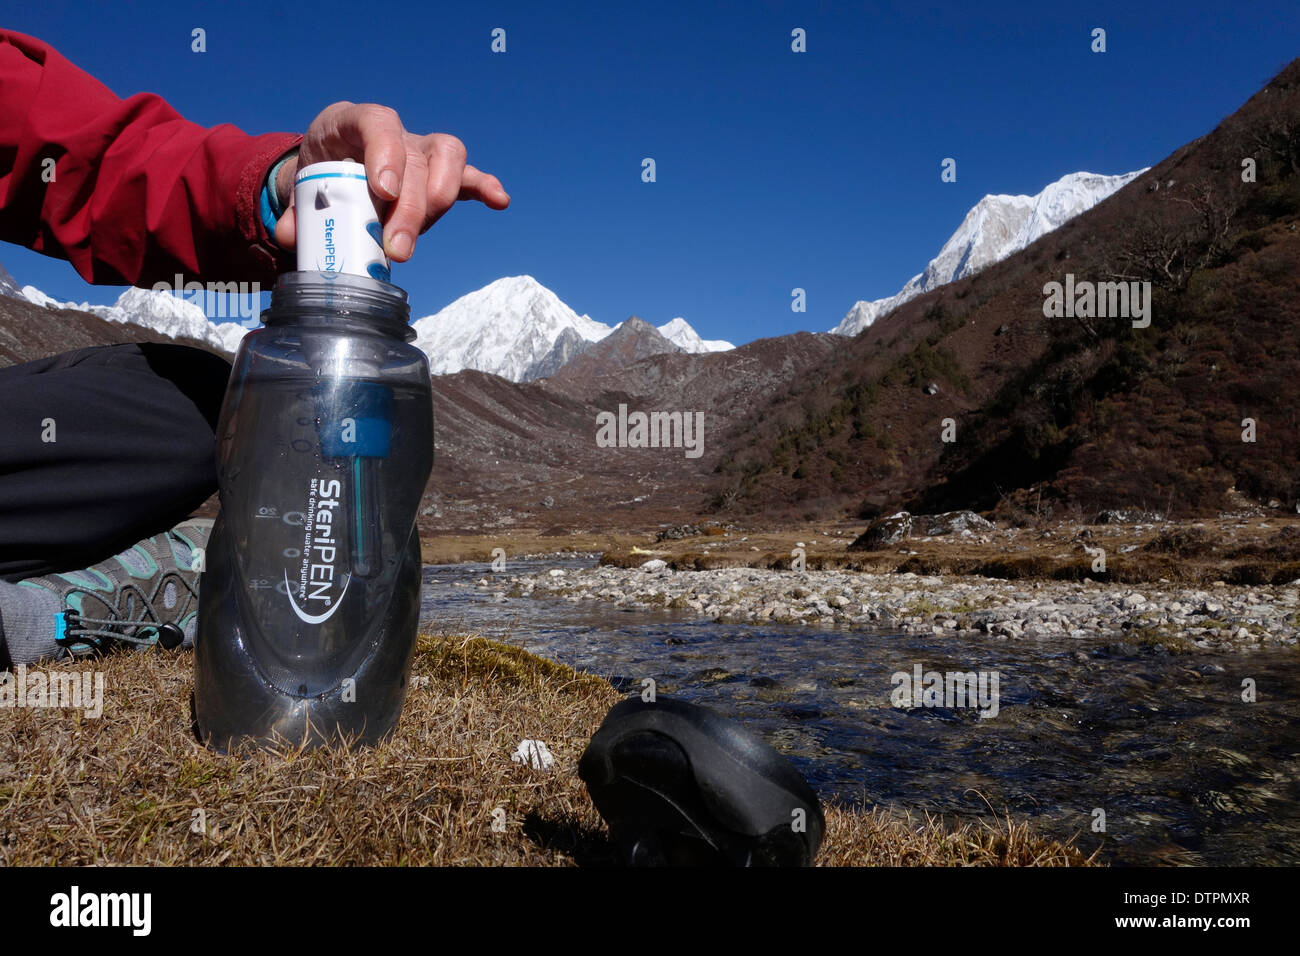 Sterilisierung von Wasser mit Hilfe einer Steripen auf einer Wanderung im Himalaya Palette von Nepal Trekker. Stockfoto